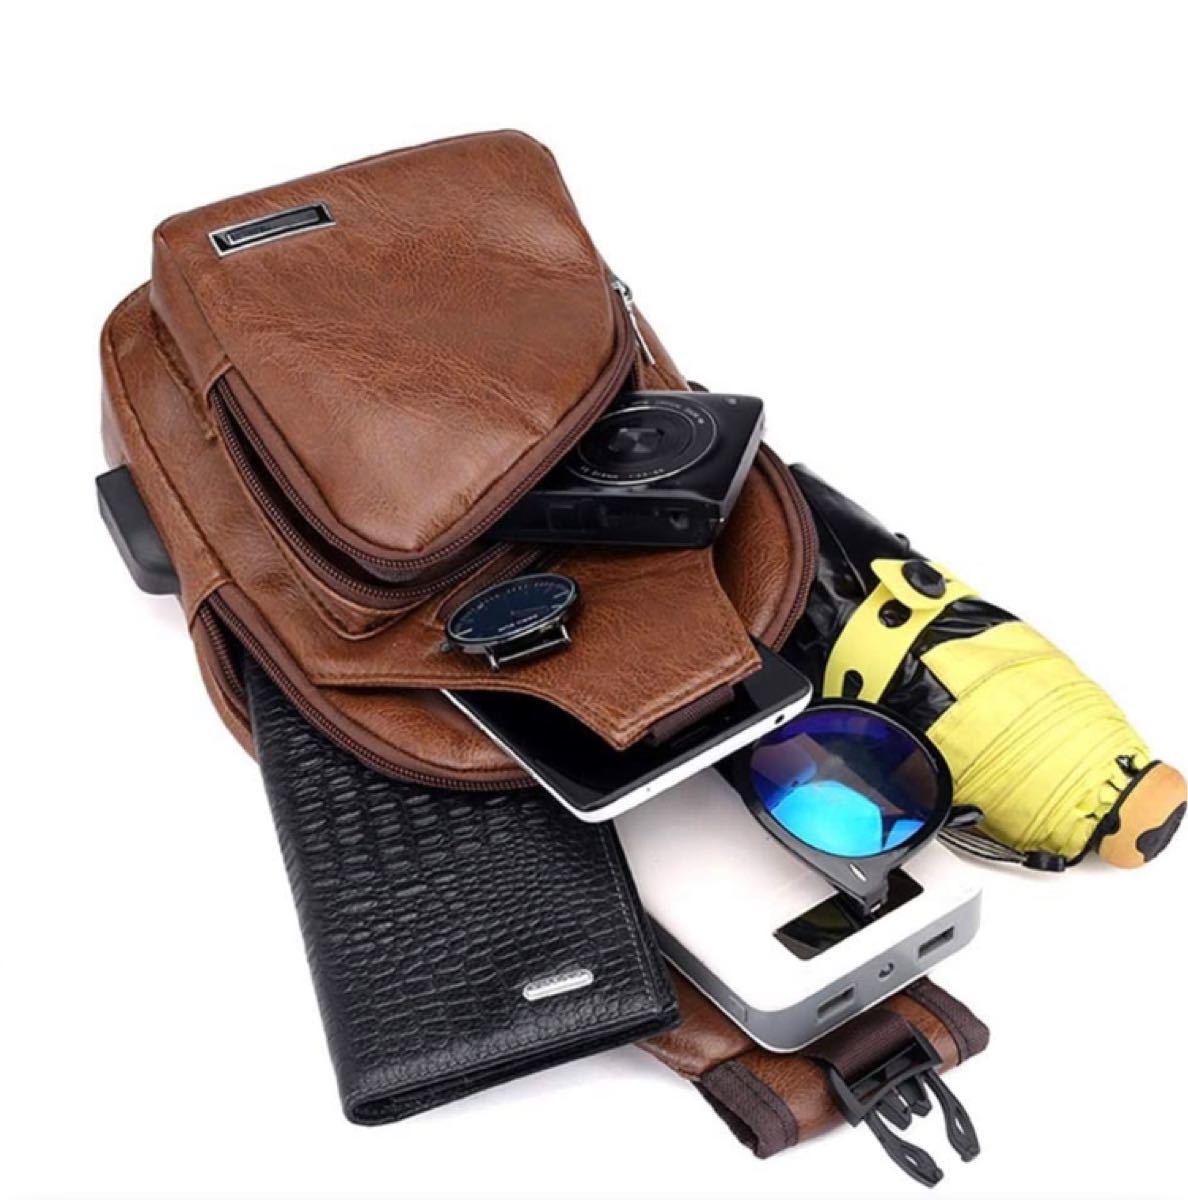 ボディバッグ ワンショルダー ブラウン メンズボディバッグ USBポート 斜めがけ 大容量 ショルダーバッグ 新品 レザー 鞄 革